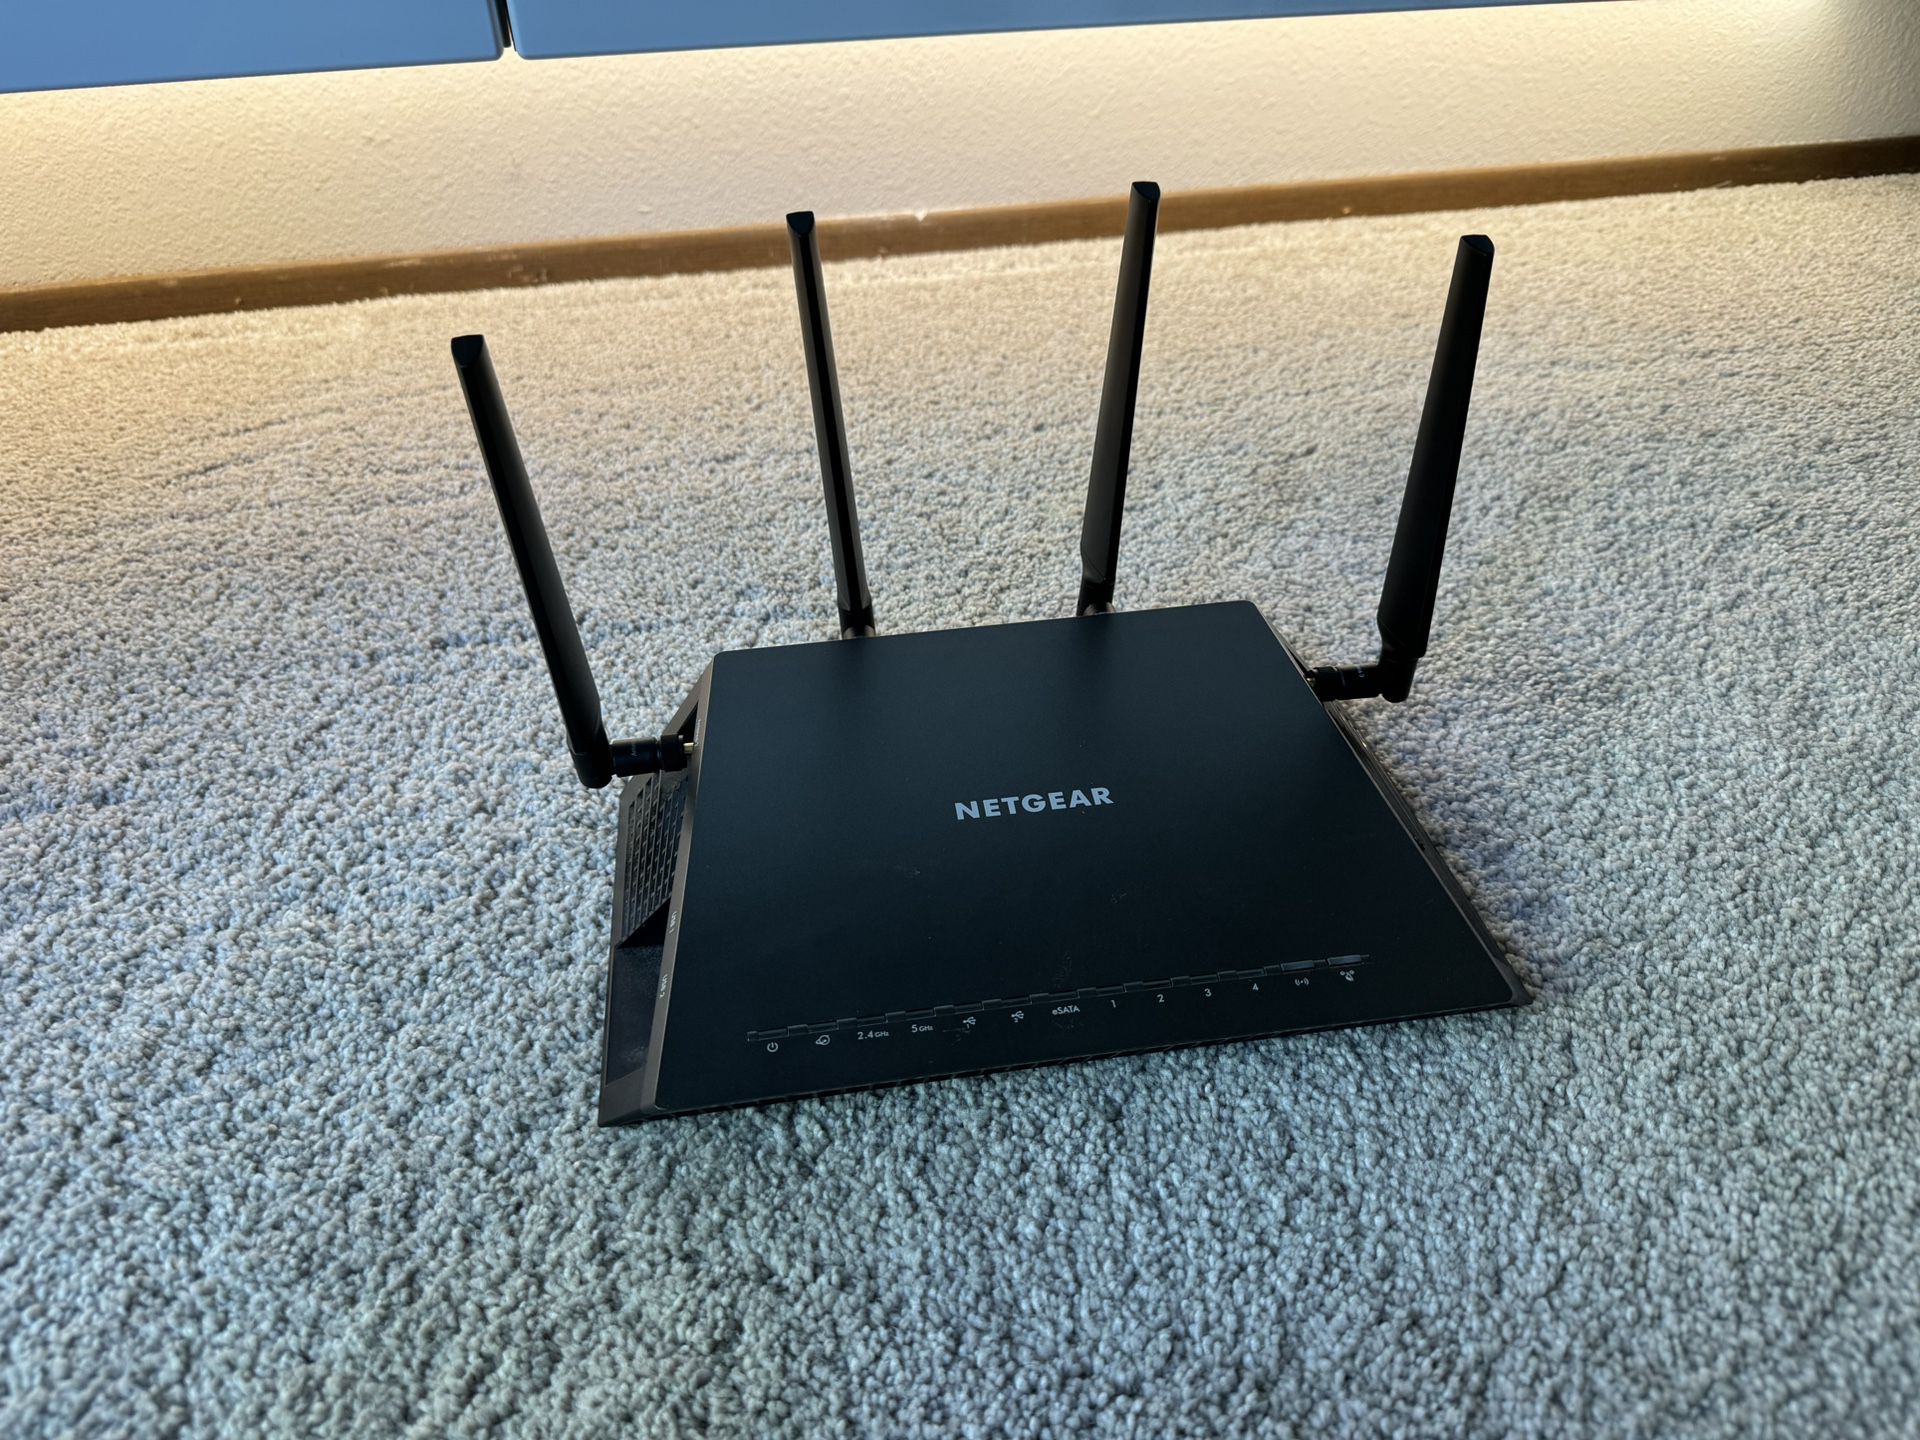 NETGEAR Nighthawk X4S WiFi Router